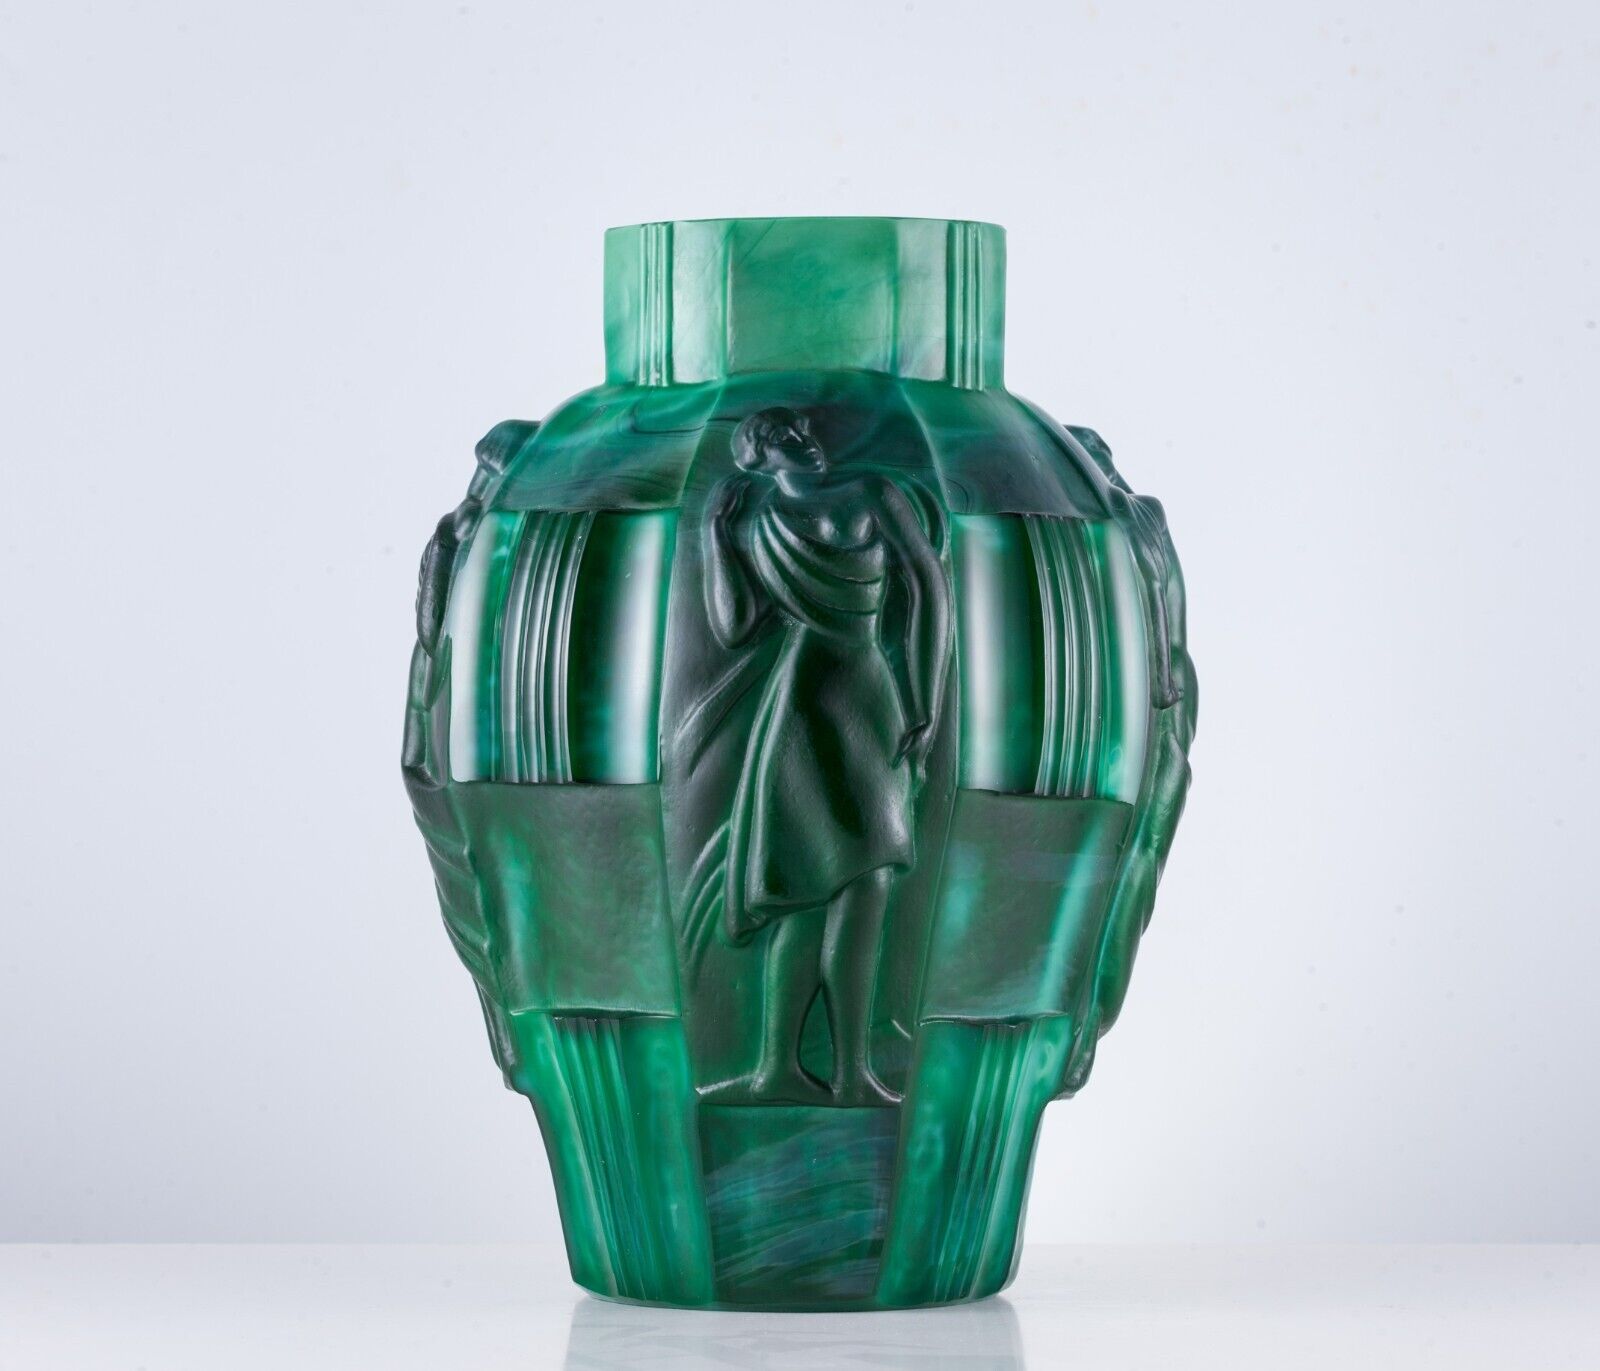 Antique Czech Art Deco Malachite Glass Vase with Danci Figures's, Curt Schlevogt